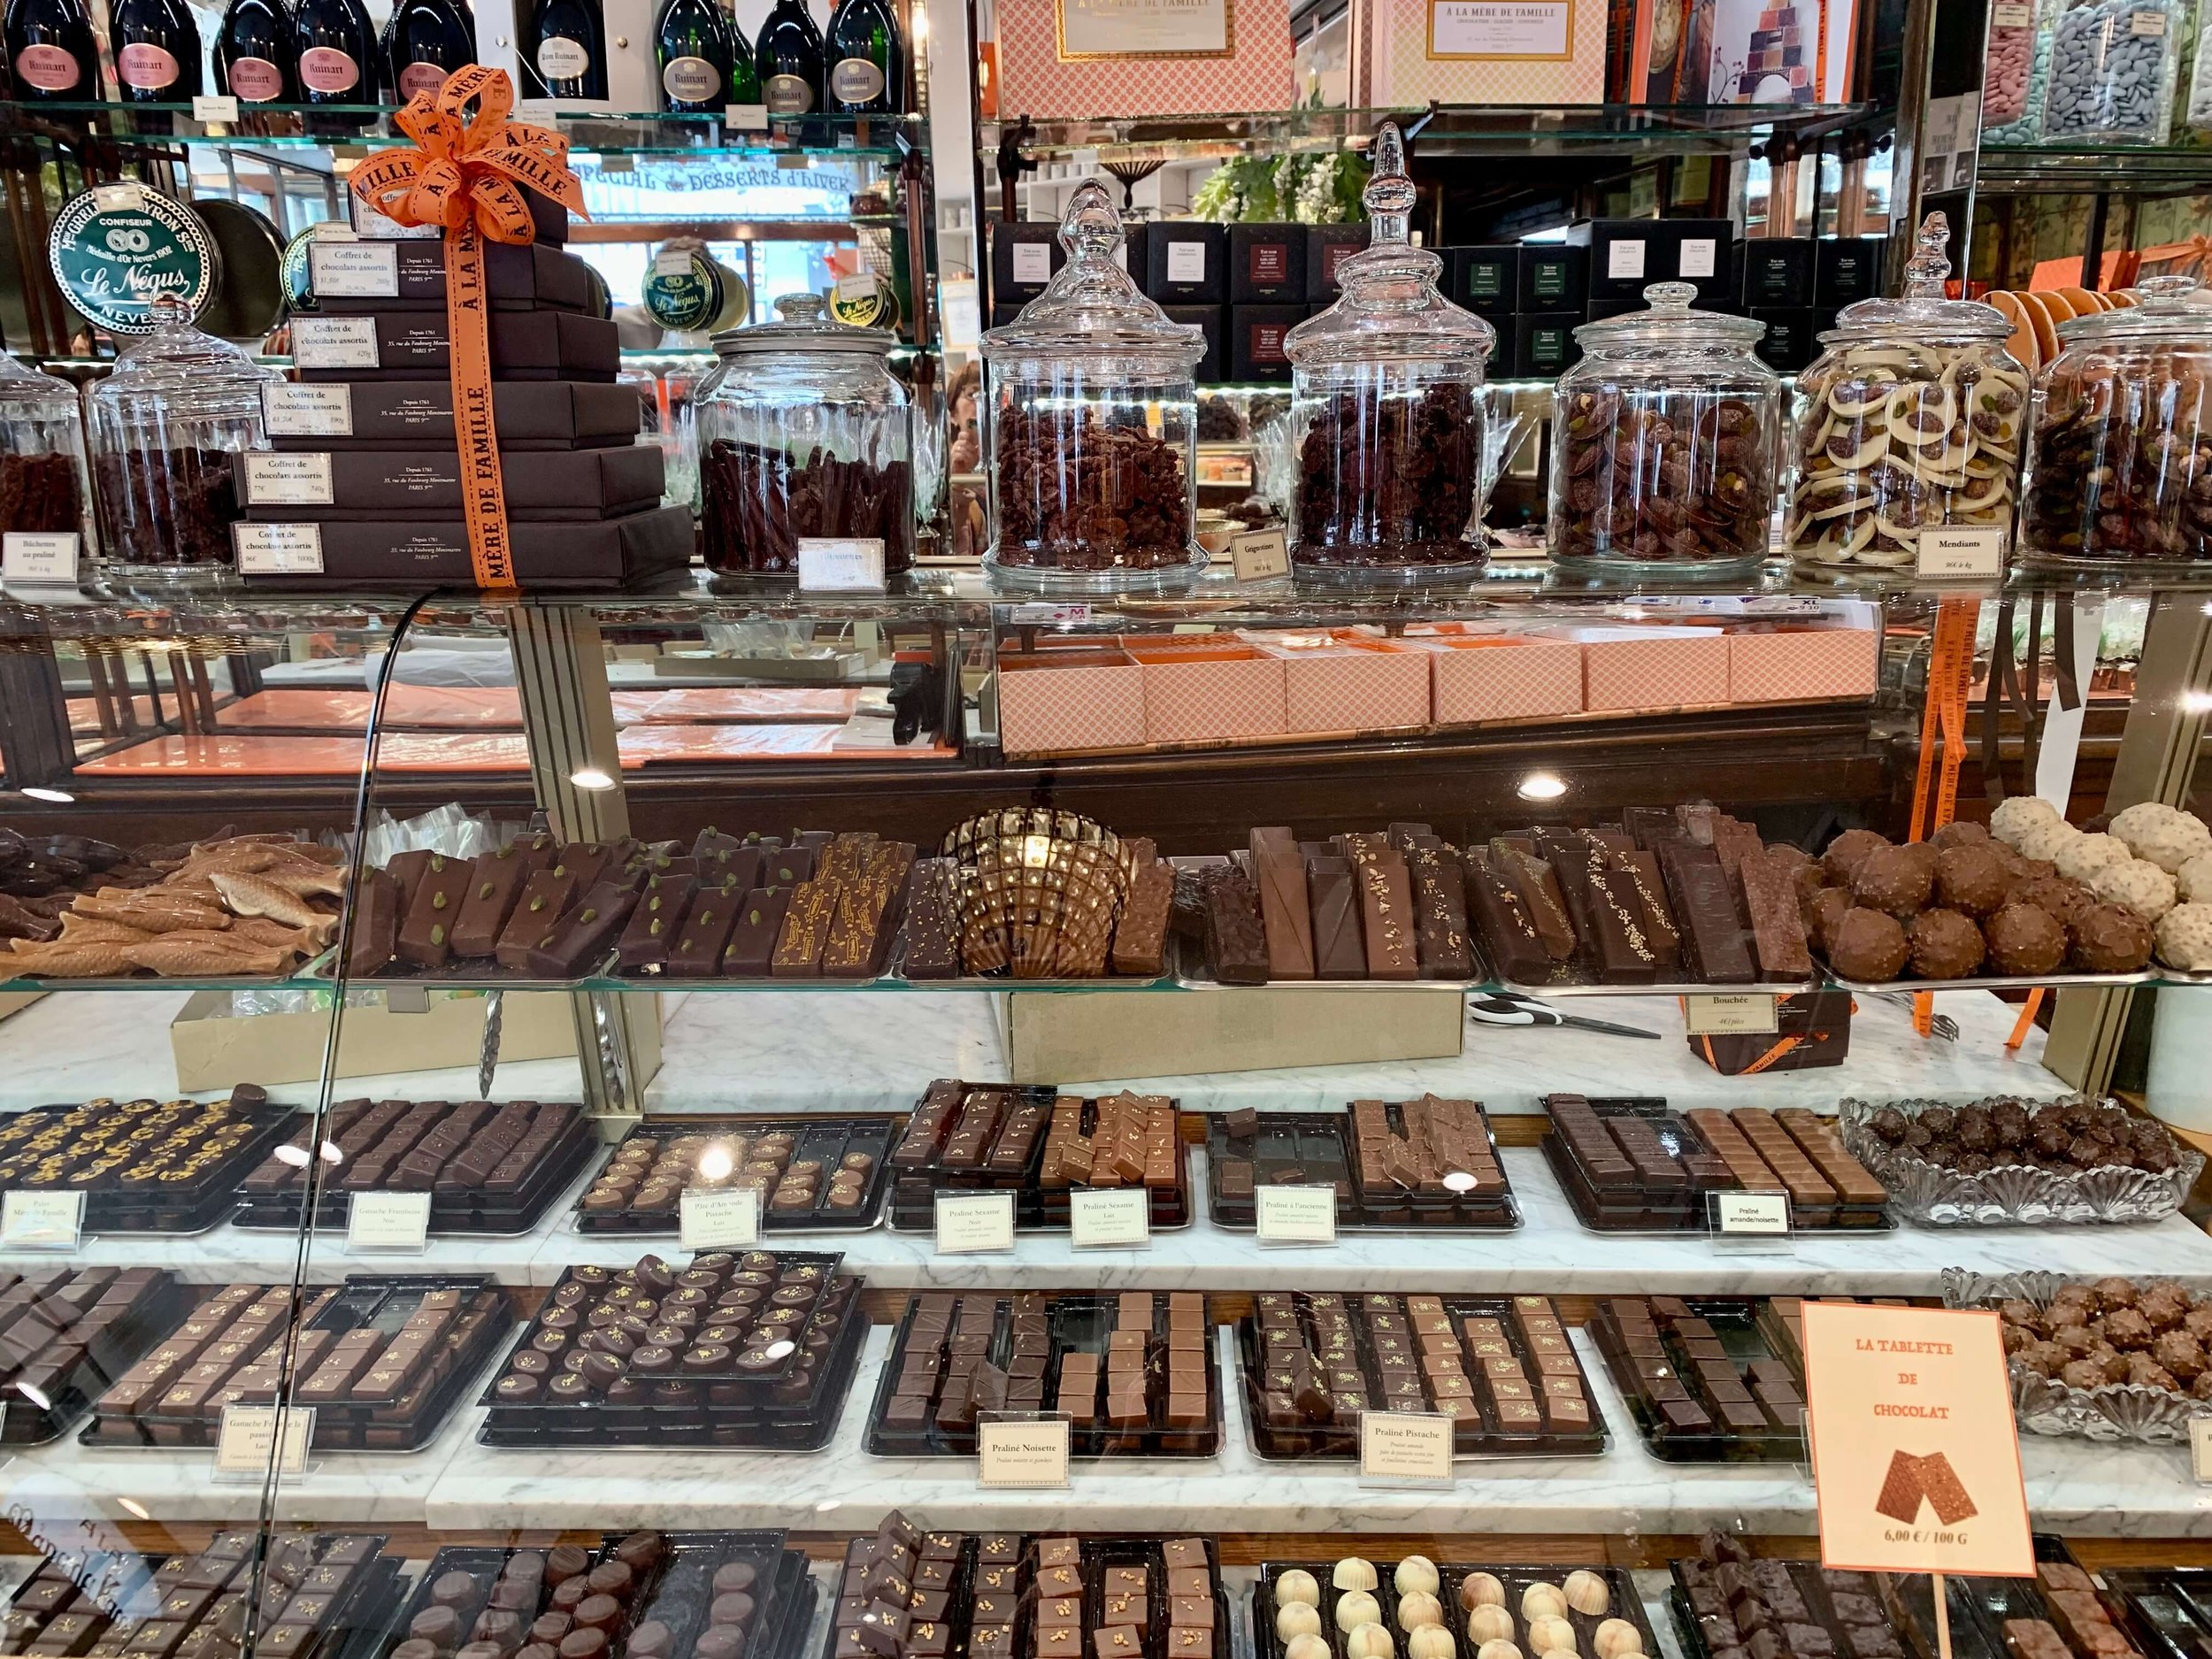 À la Mère de Famille, the Oldest Chocolate Shop in Paris